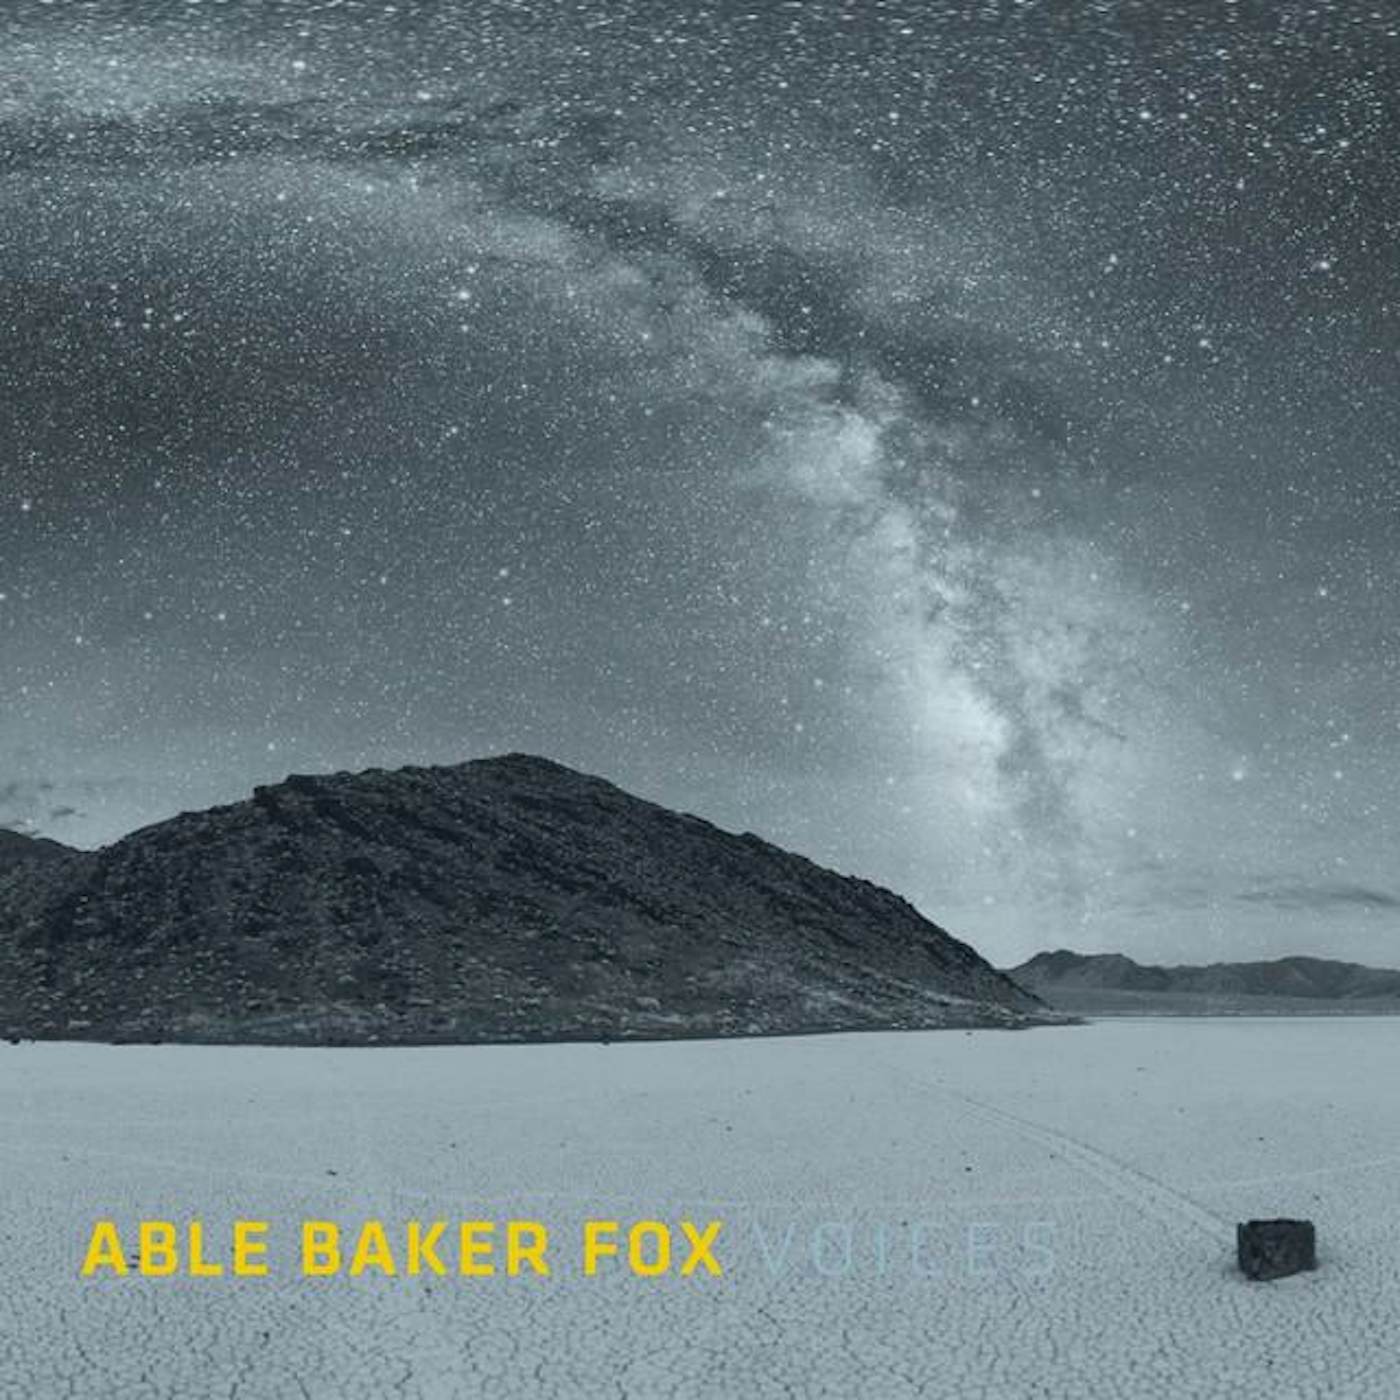 Able Baker Fox